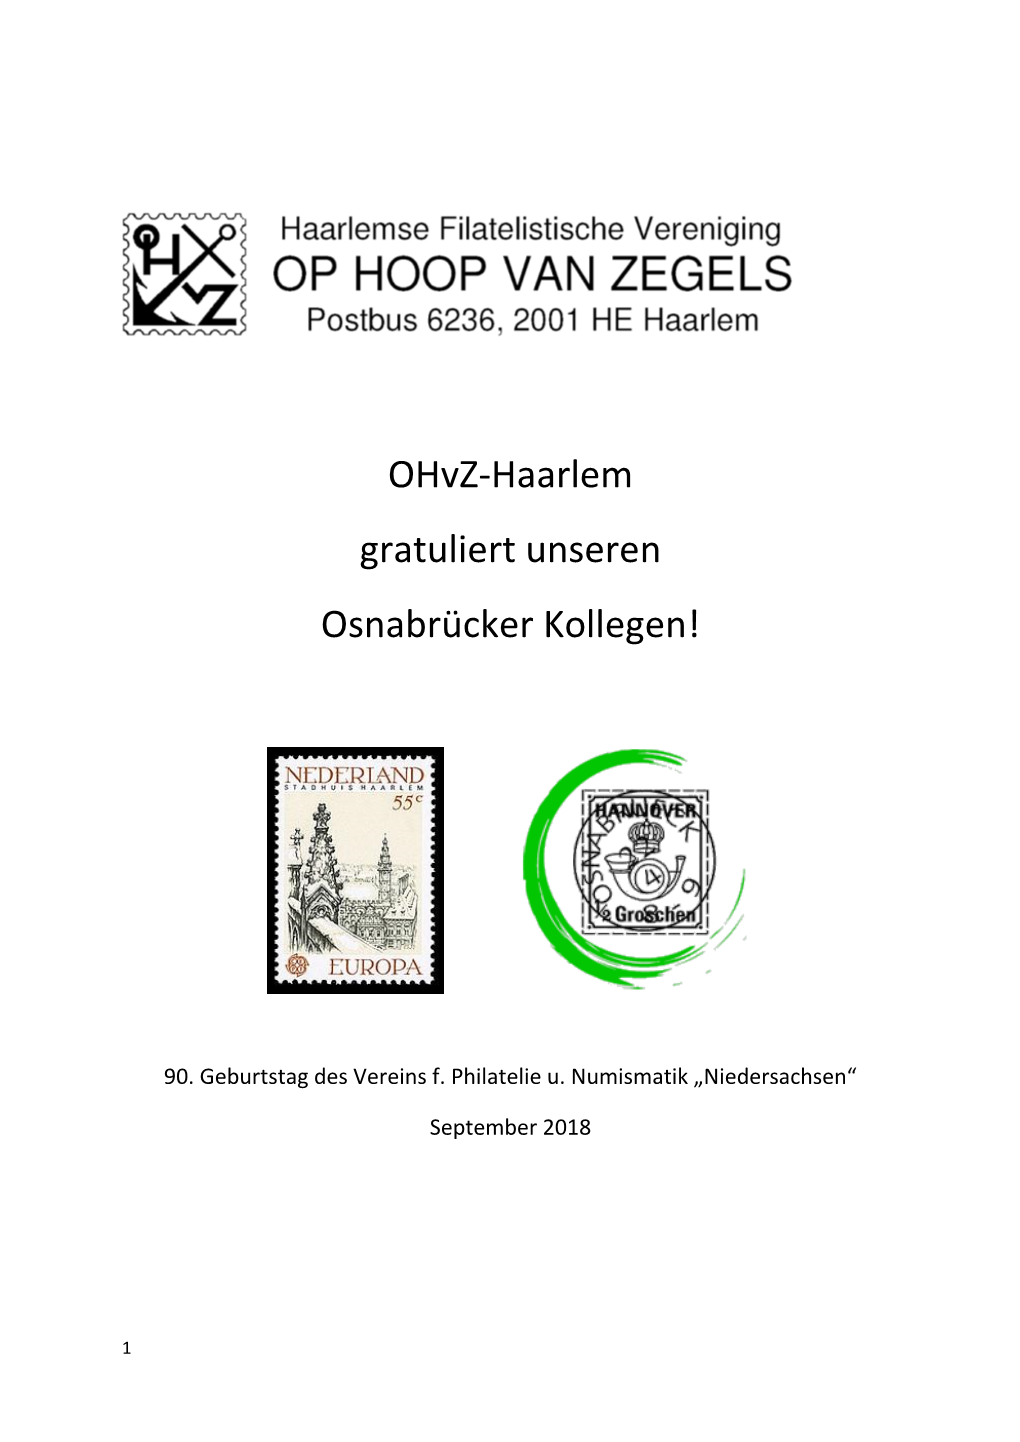 Ohvz-Haarlem Gratuliert Unseren Osnabrücker Kollegen!